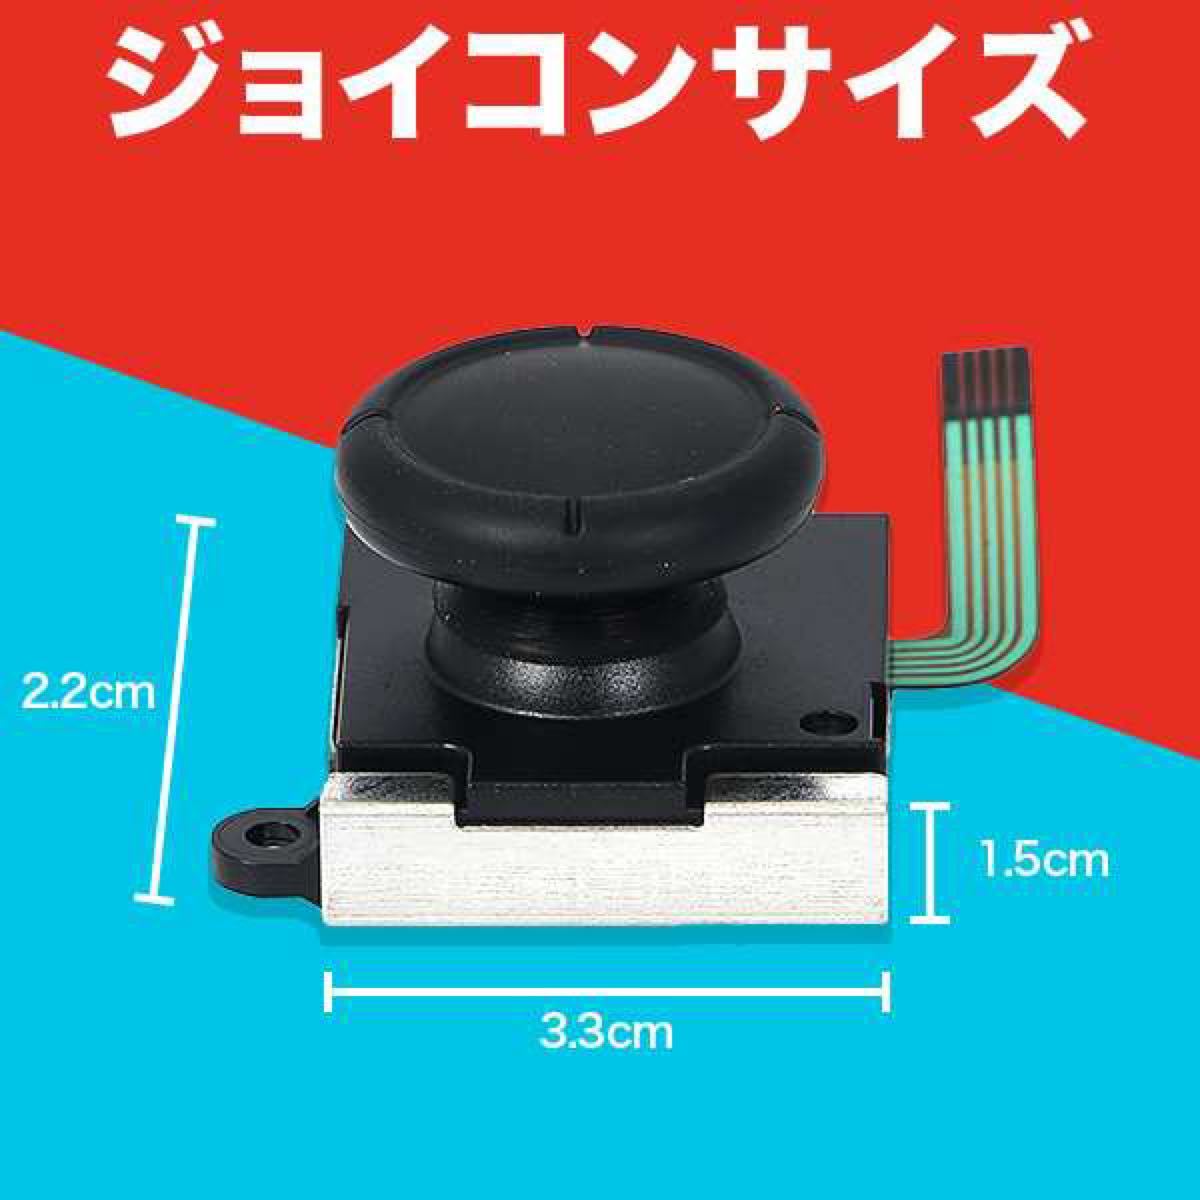 【初心者向け】Nintendo Switchジョイコン修理キット【送料無料!!】